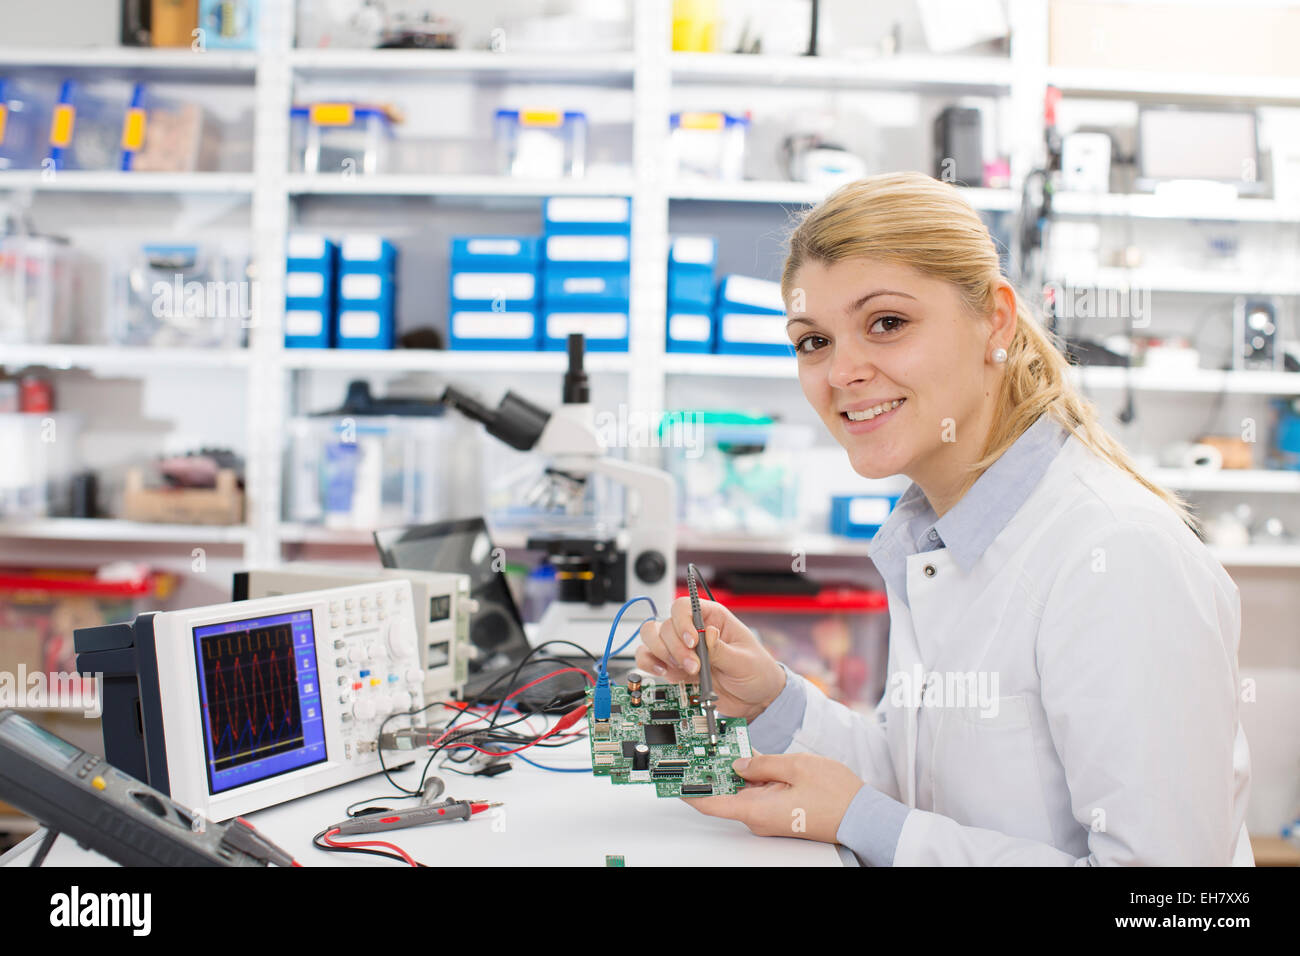 Лабораторный ассистент. Лаб ассистент. Должность лаборатории женщин. Фото девушки изучающей электротехнику. Девушка собирает электронику.